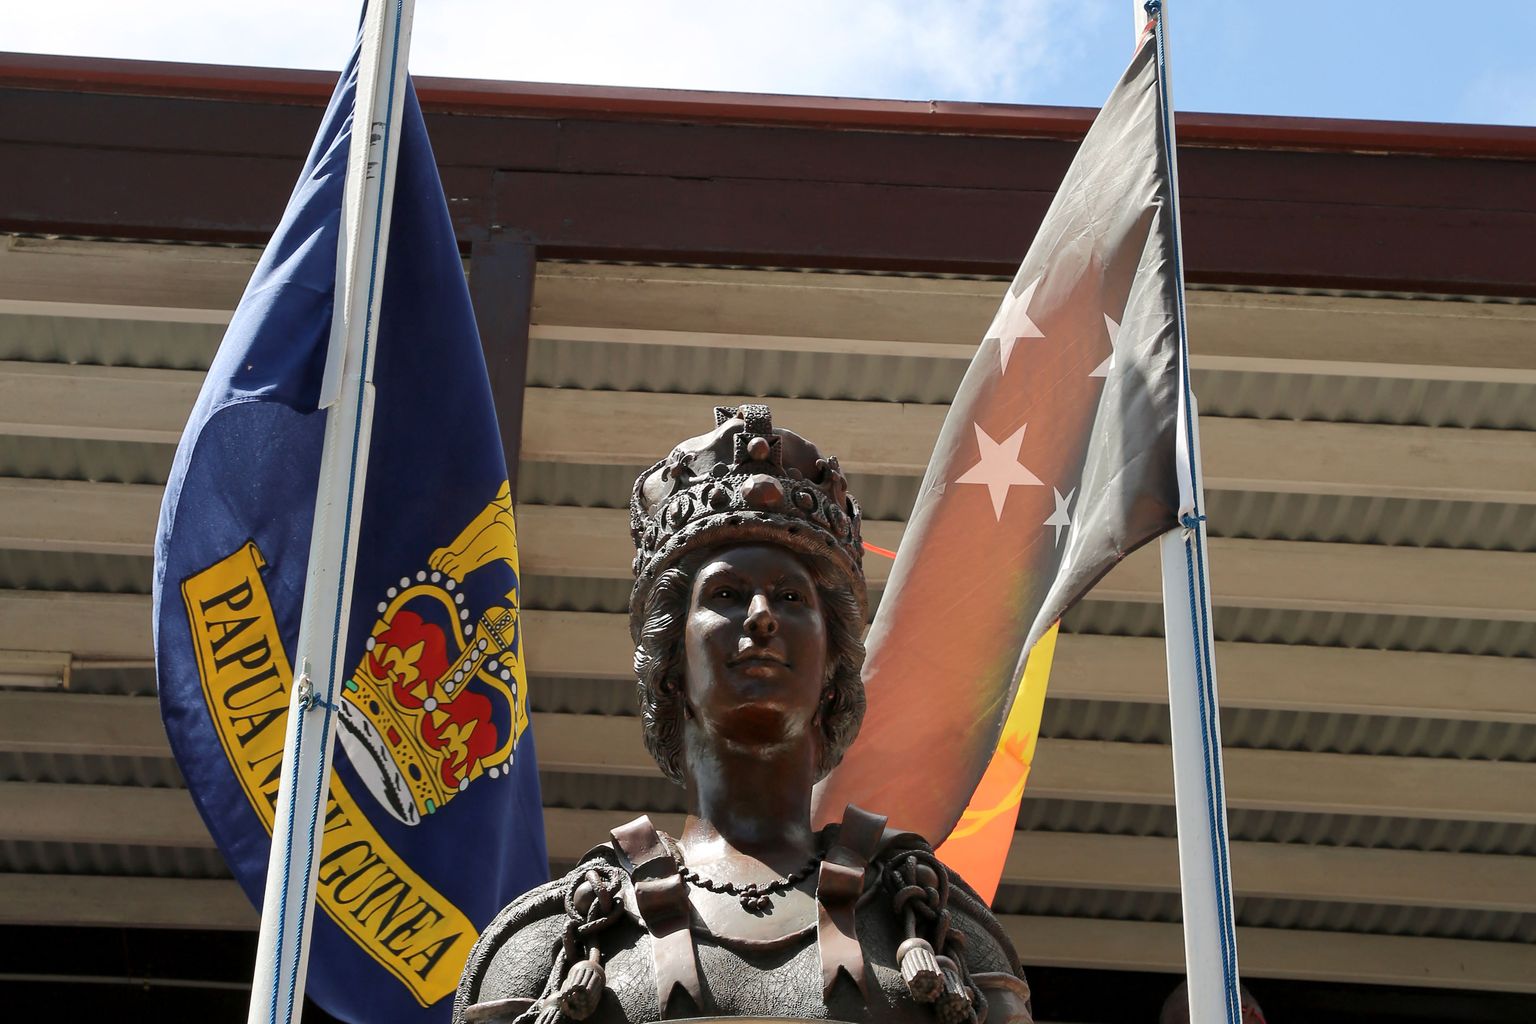 Briti kuninganna Elizabeth II kuju valitsushoone ees pealinnas Port Moresbys 9. septembril, päev pärast Suurbritannia monarhi ja seeläbi ühtlasi ka Paapua Uus-Guinea riigipea surma.